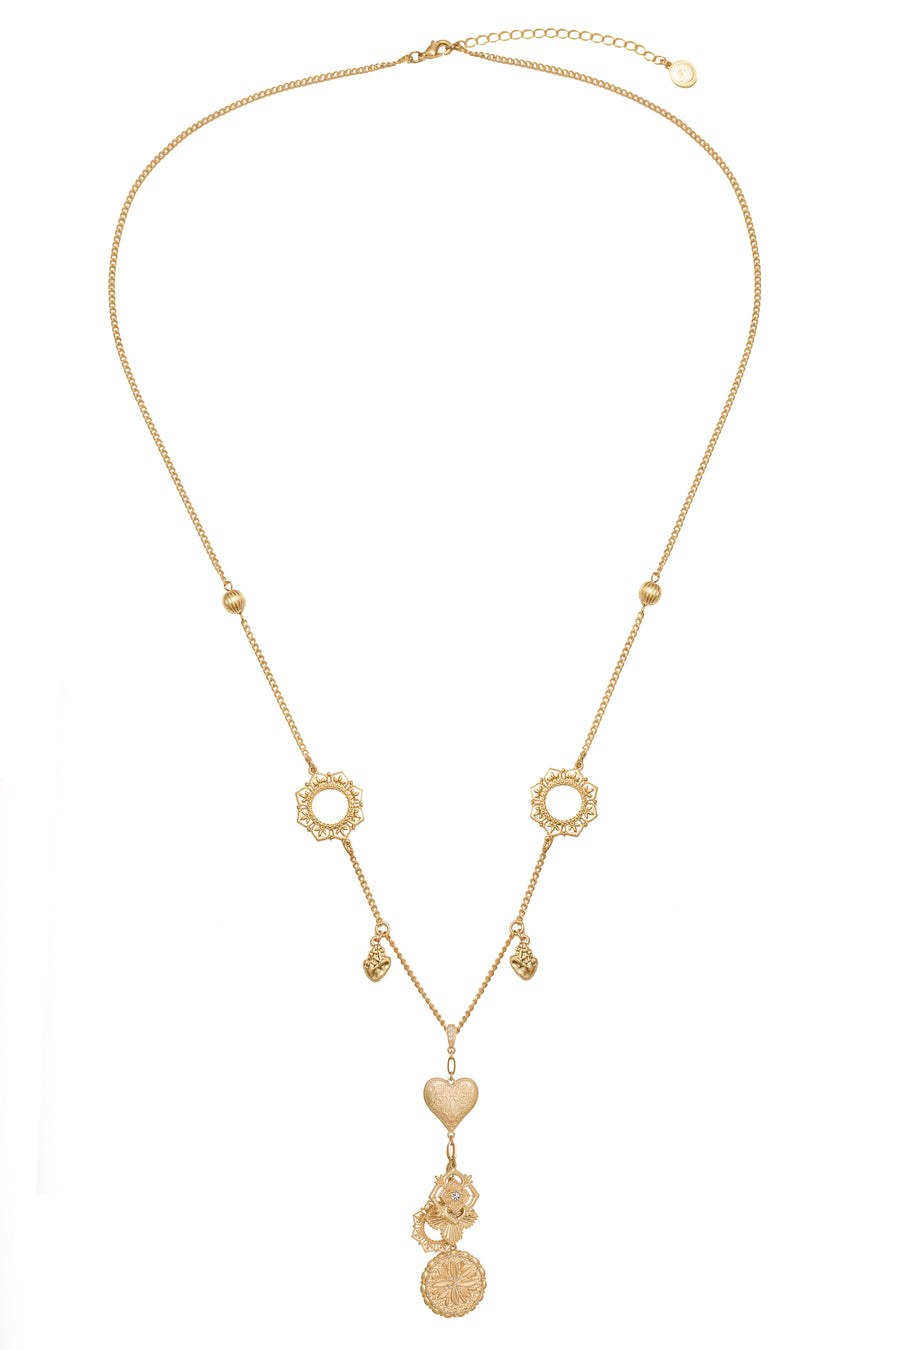 Bibi Bijoux Gold Love Struck Lariat Necklace